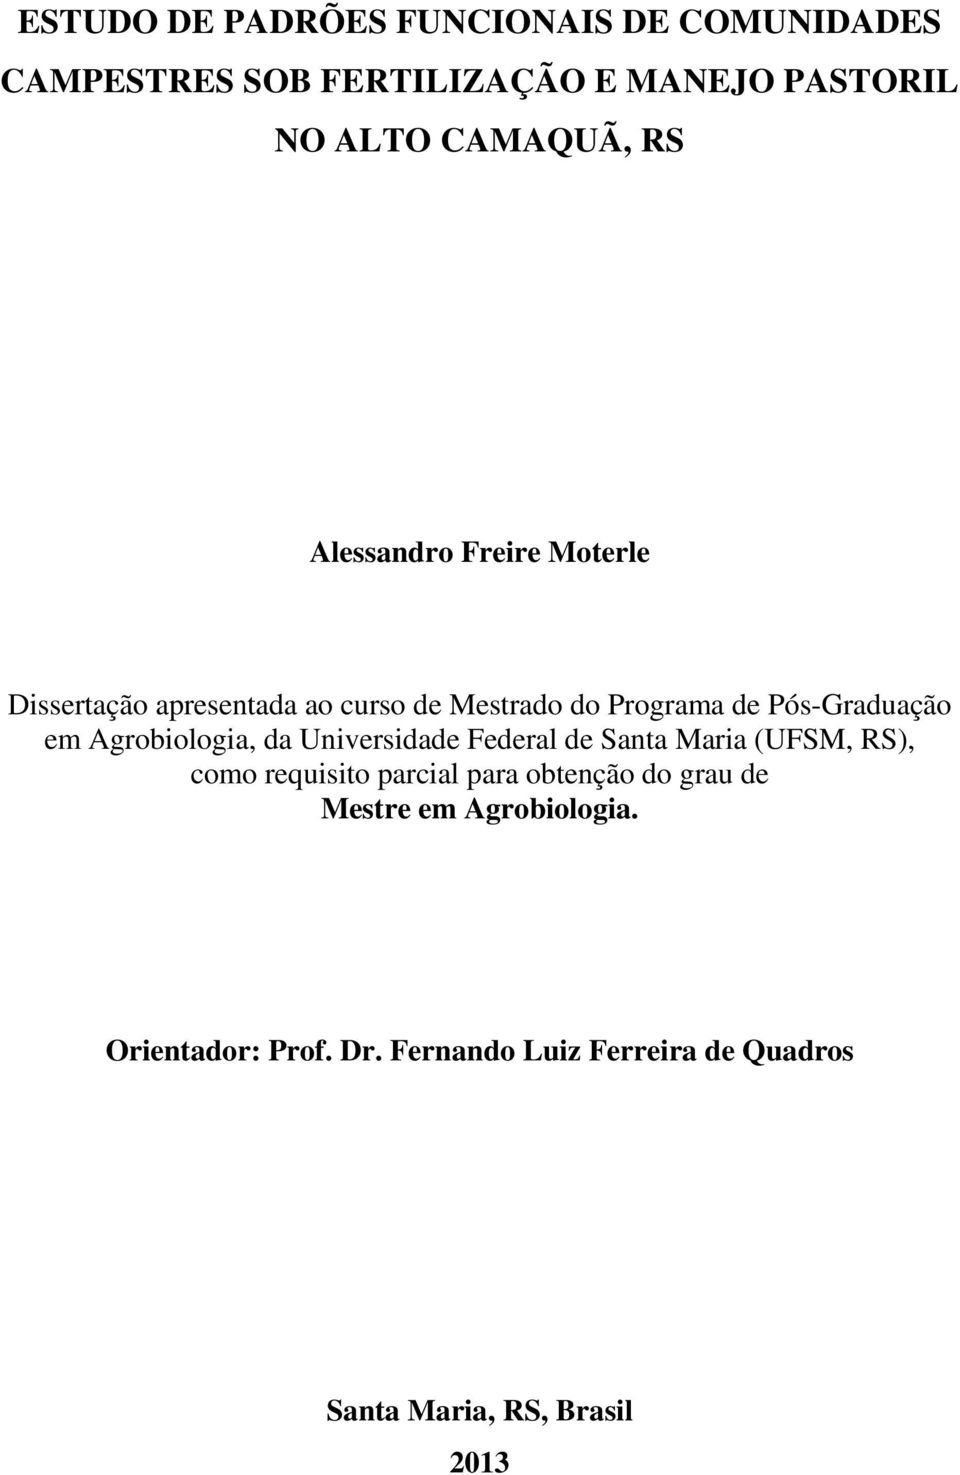 Agrobiologia, da Universidade Federal de Santa Maria (UFSM, RS), como requisito parcial para obtenção do